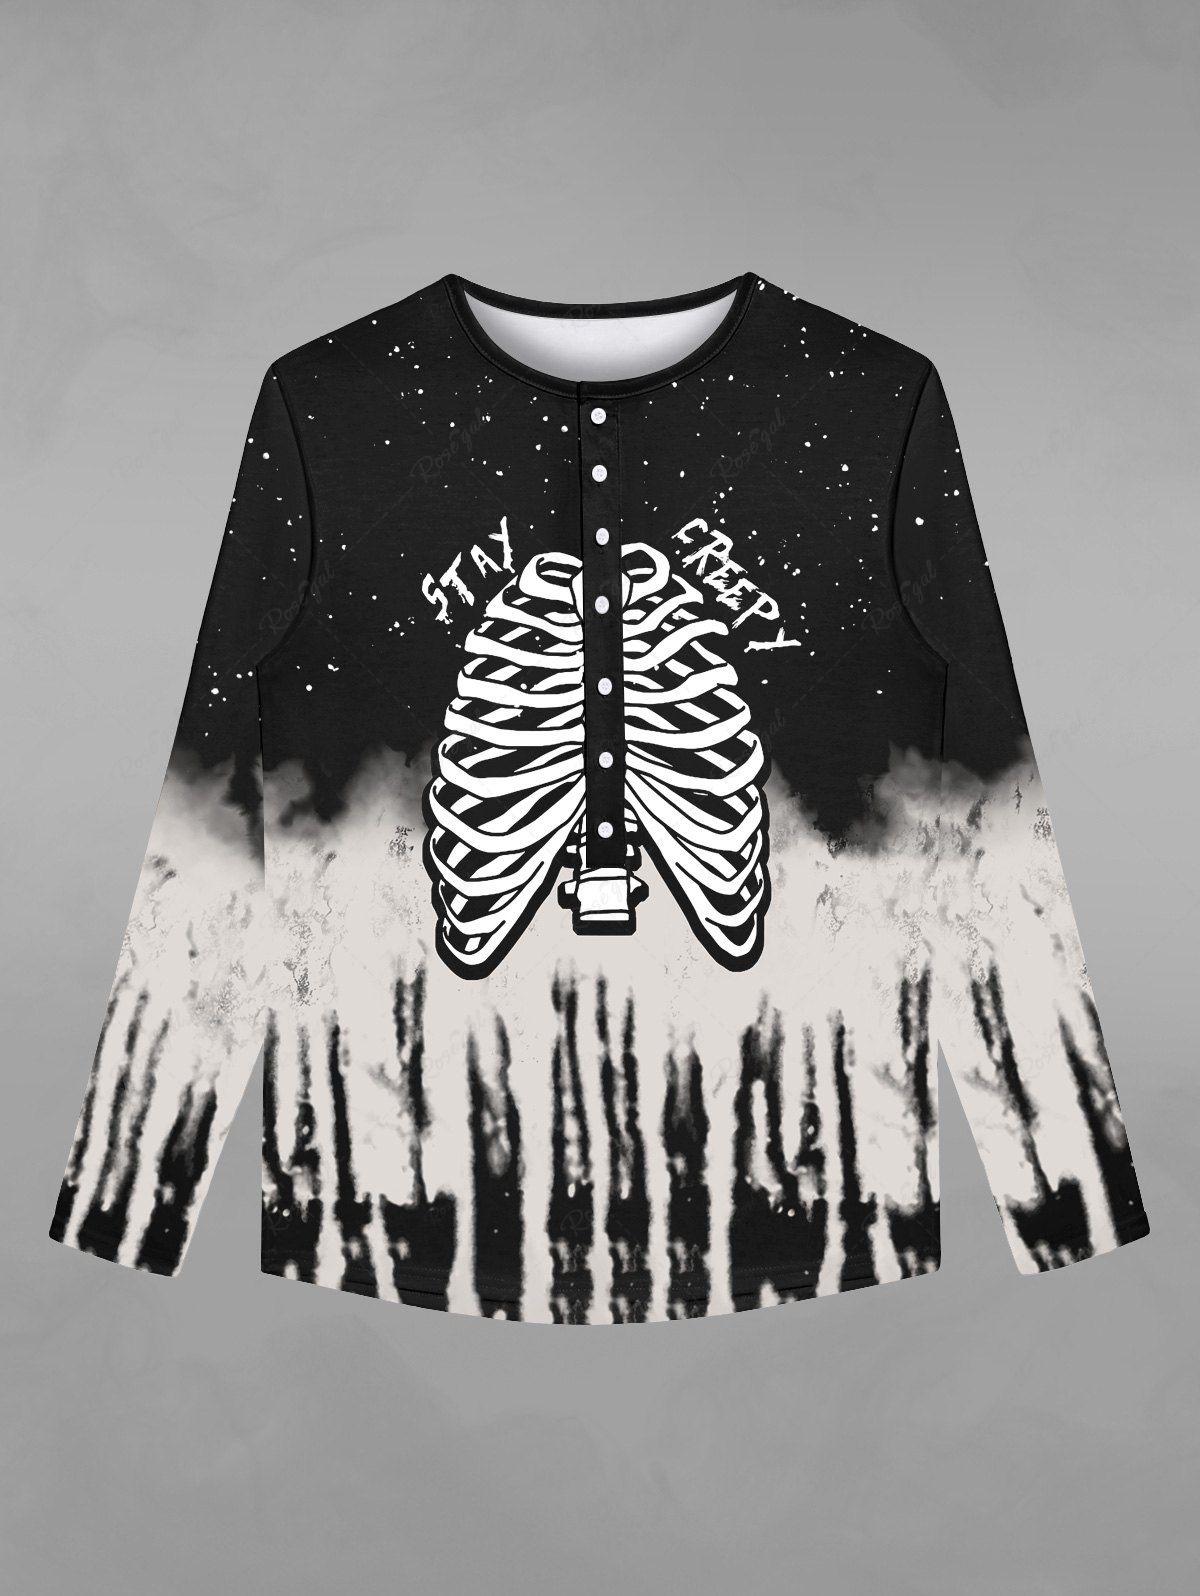 T-shirt D'Halloween Déchiré Gothique Squelette Galaxie Imprimés avec Boutons Noir 8XL